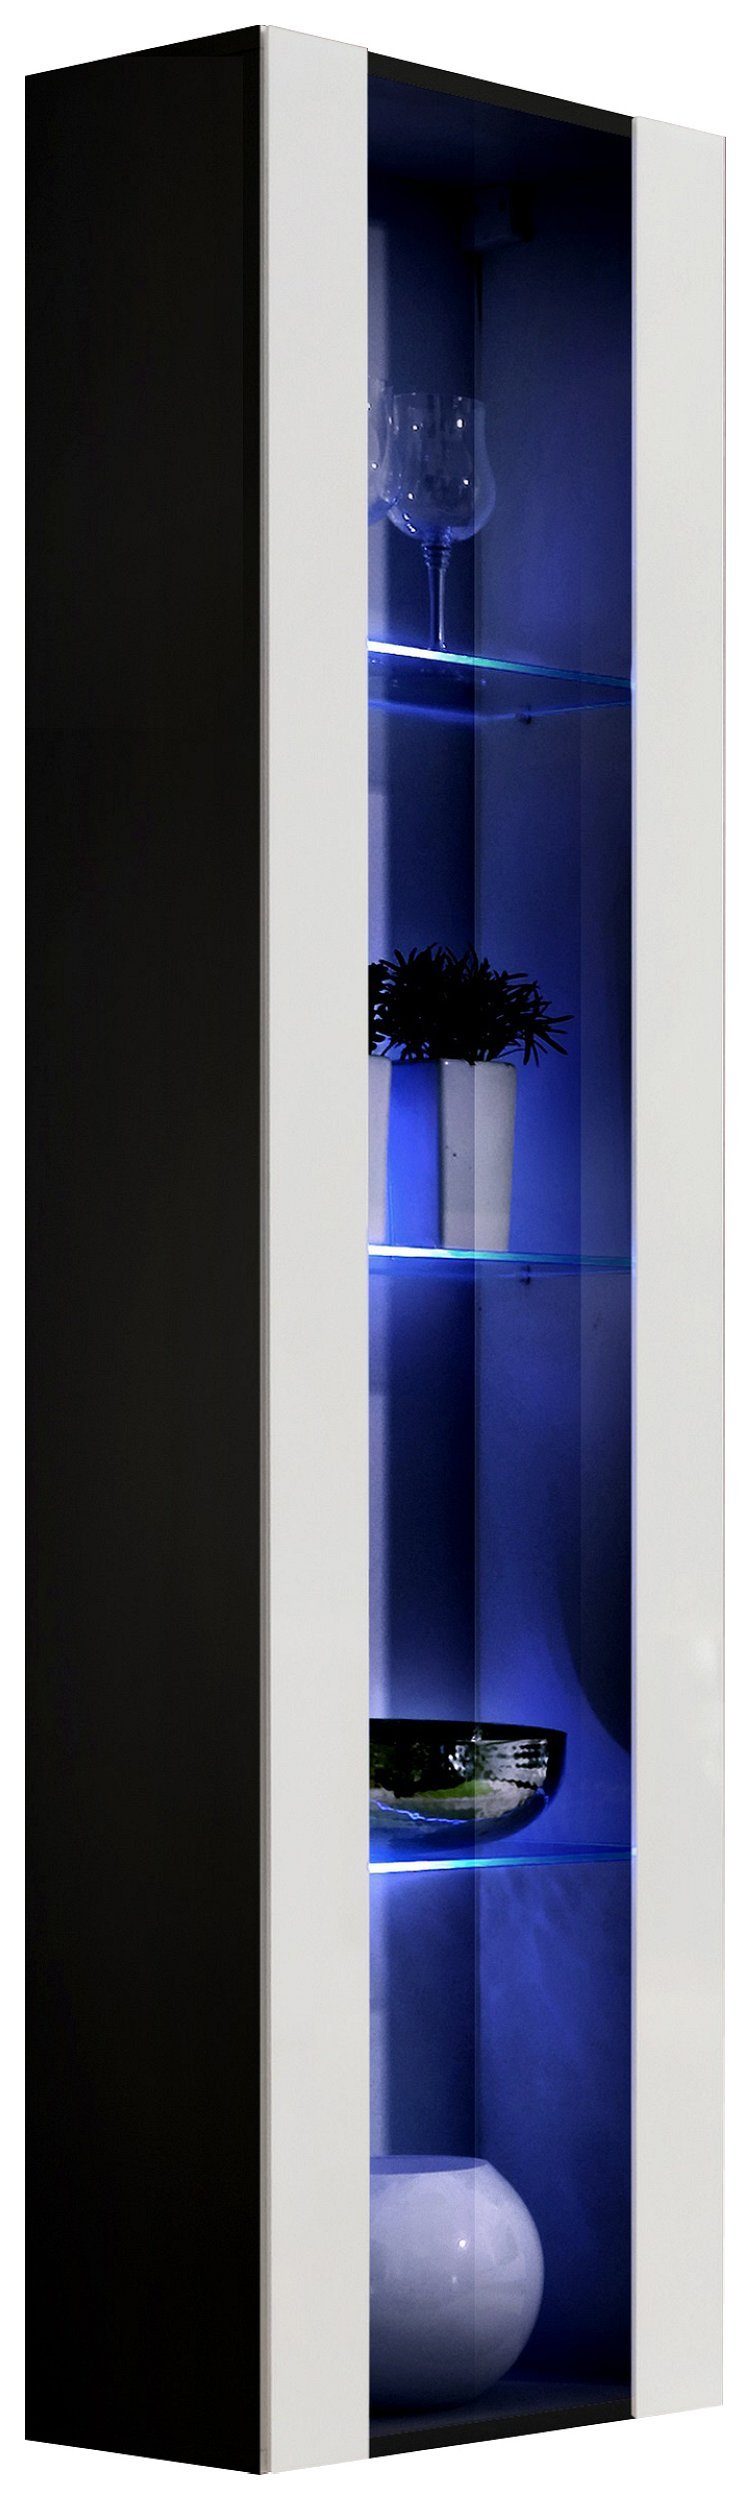 99rooms Stauraumschrank FLI T41 rechts 170x40x29 cm (Hängevitrine, Glasvitrine, Wohnmöbel) mit 3 Glaseinlegeböden, inkl. LED-Beleuchtung, Glaseinsatz, mit Push-to-Open, Hochglanzfront, Design Modern, variabel hängbar